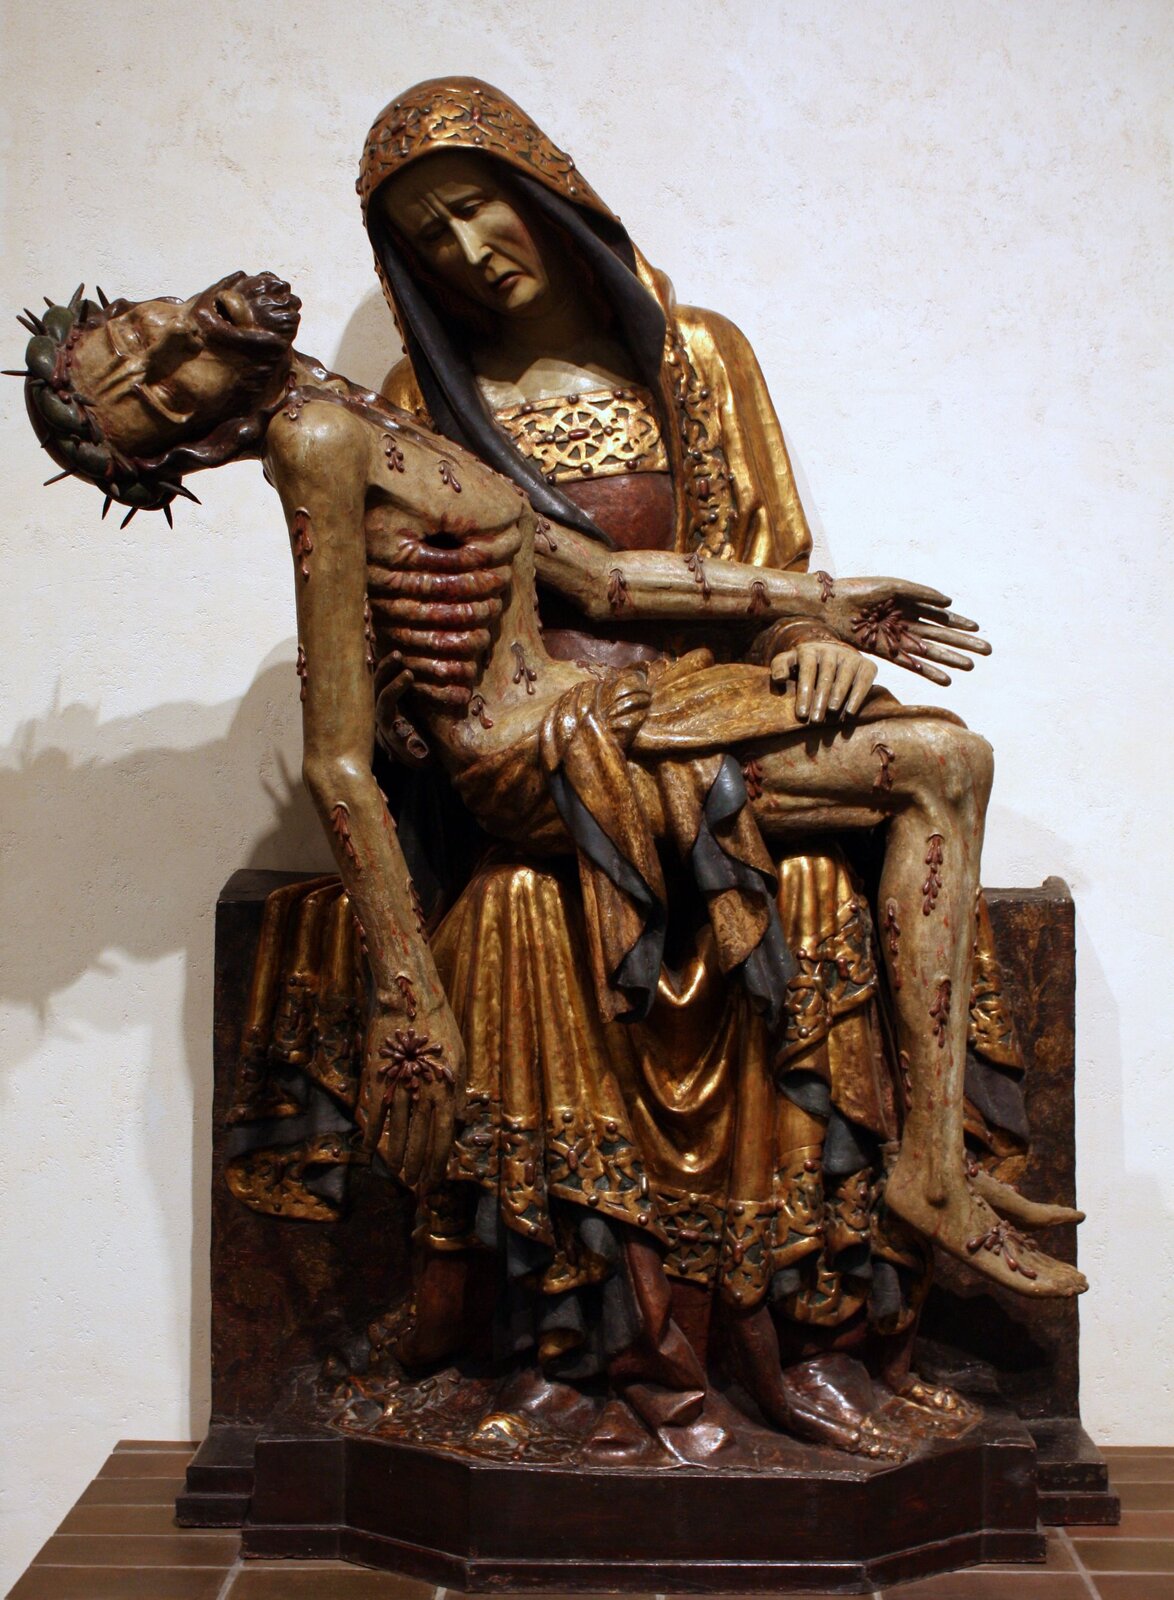 Ilustracja przedstawia figurę, na której Matka Boska opłakuje śmierć Jezusa. Maryja ubrana jest w złote szaty, ma także złoty kaptur. Na jej kolanach spoczywa ciało Chrystusa – poranione, z widocznymi żebrami oraz dziurami w ciele. Na głowie widoczna jest jeszcze korona cierniowa.